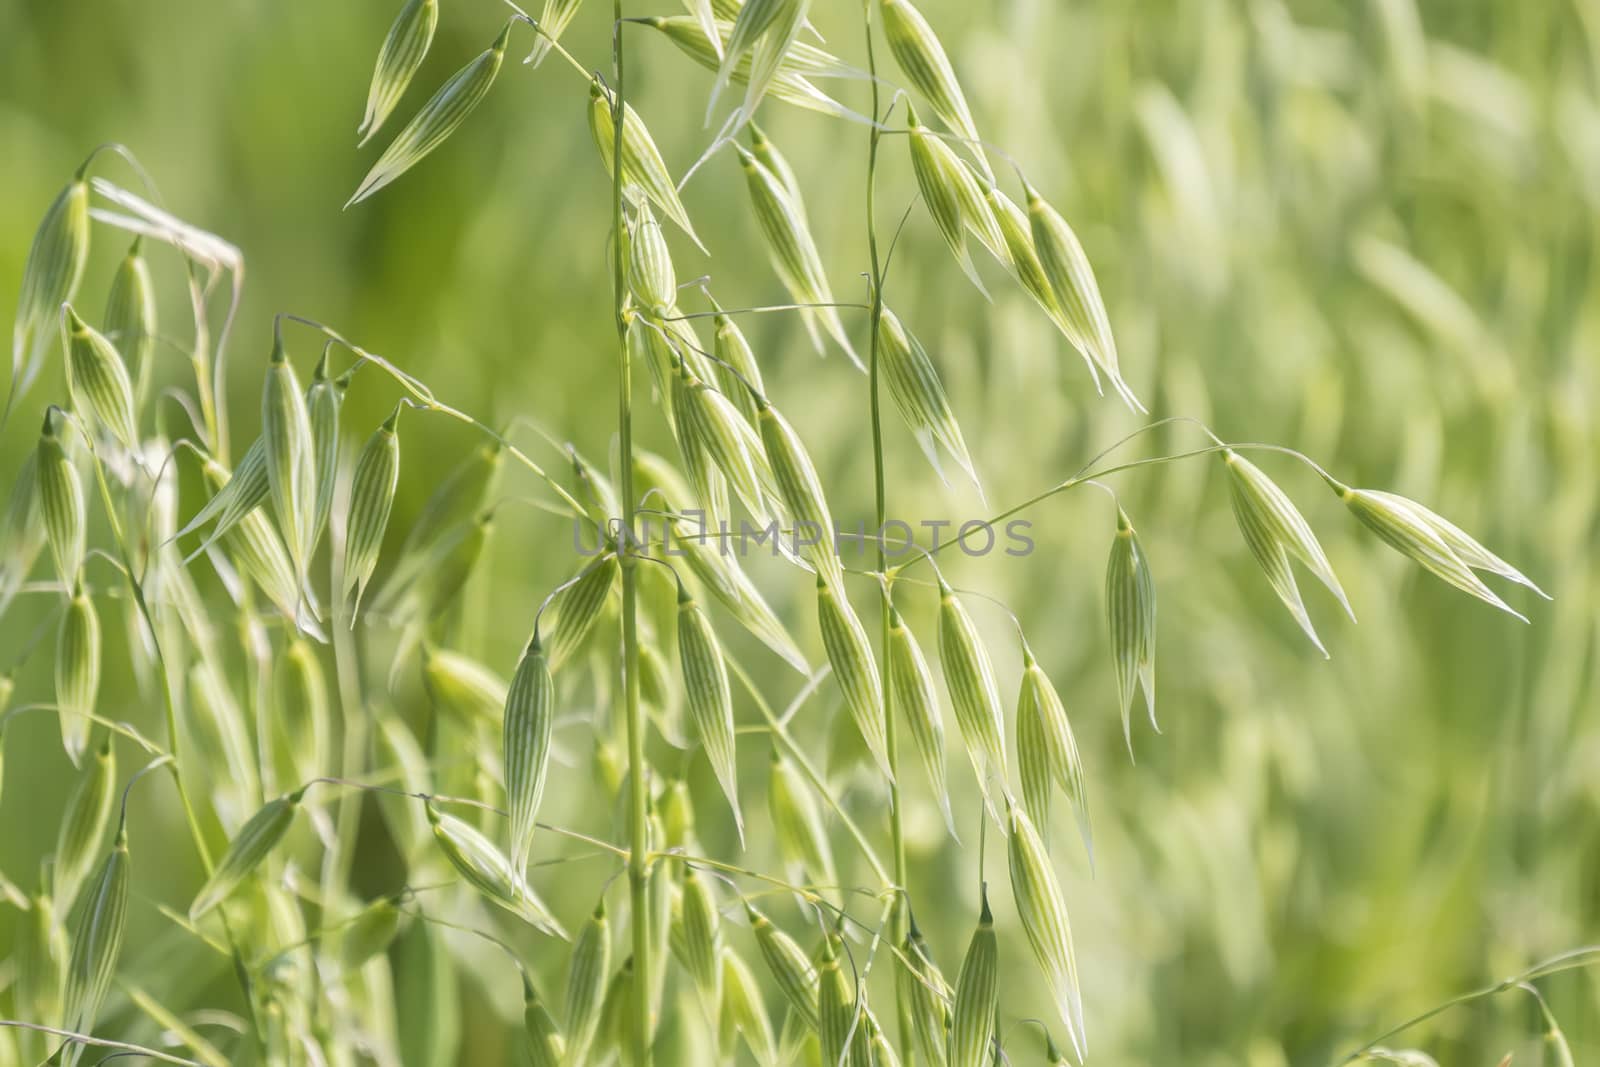 Unripe Oat harvest, green field by max8xam